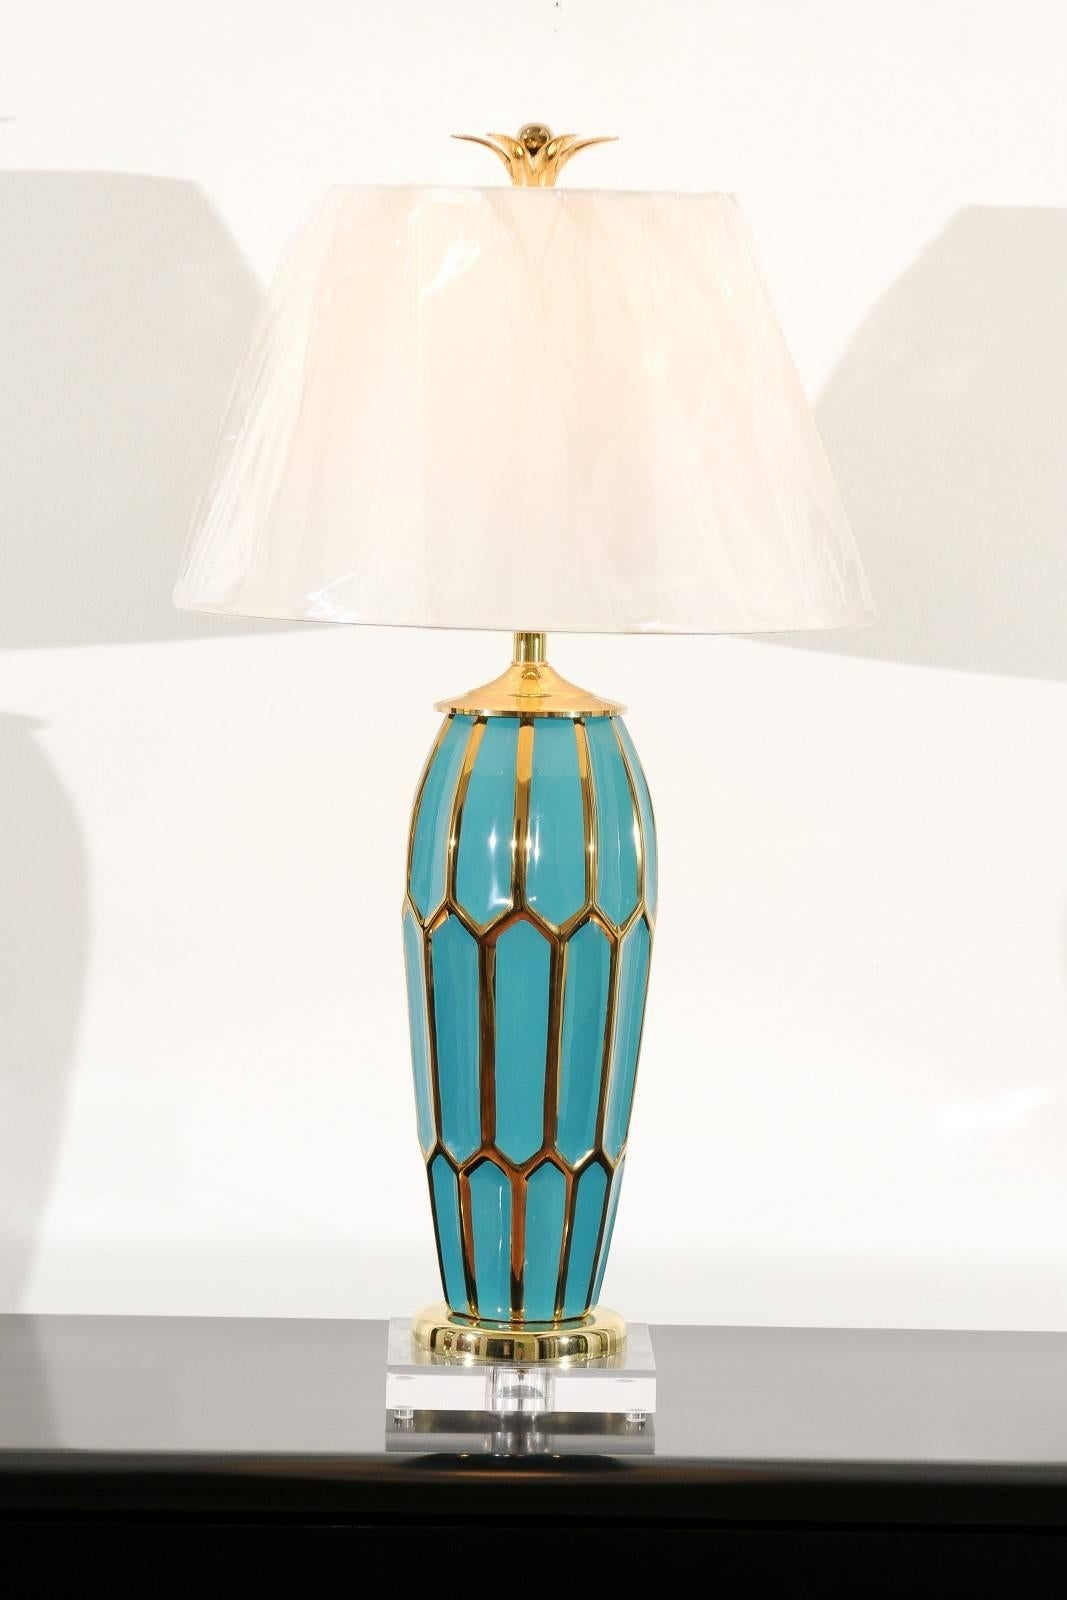 Ein wunderschönes Paar Keramikgefäße als maßgefertigte Lampen. Schöne türkisfarbene Form mit geometrischen Motiven, die in Gold hervorgehoben sind. Akzente aus Lucite und massivem Messing. Maßgefertigte Messingblütenblätter und -kugeln verleihen dem